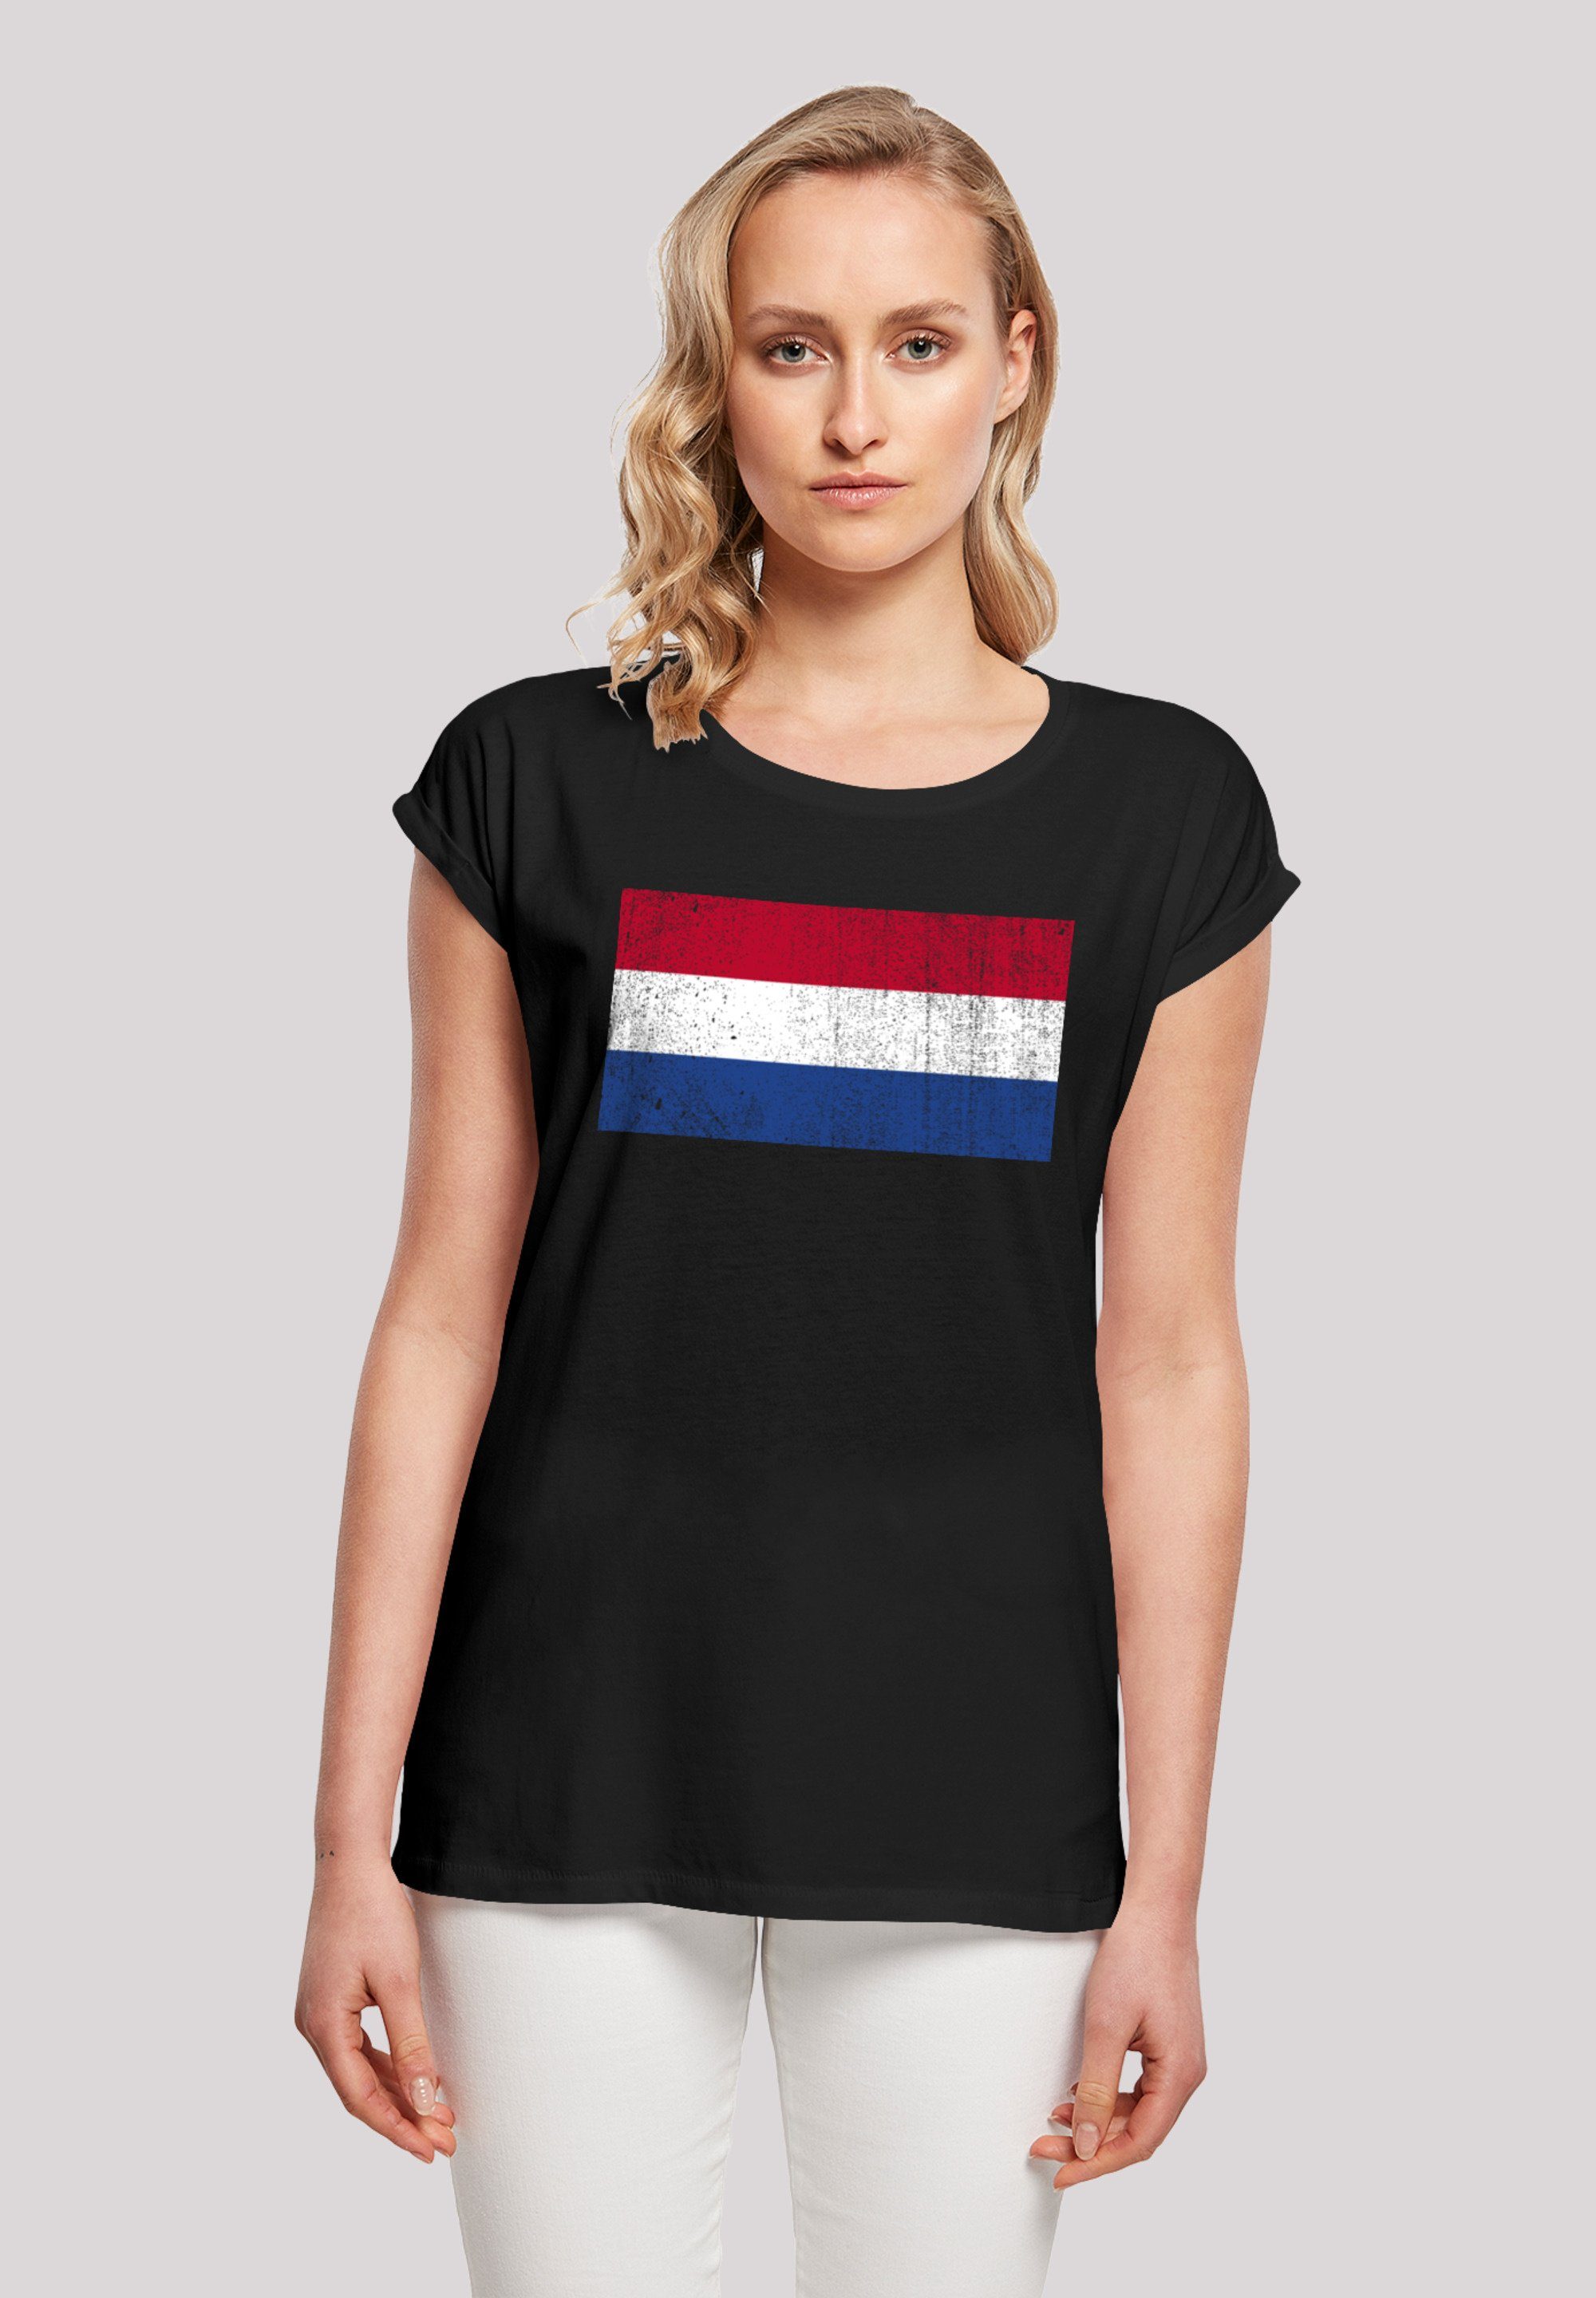 F4NT4STIC T-Shirt cm Model Flagge Größe Holland distressed groß ist trägt und Print, M 170 Netherlands Das NIederlande